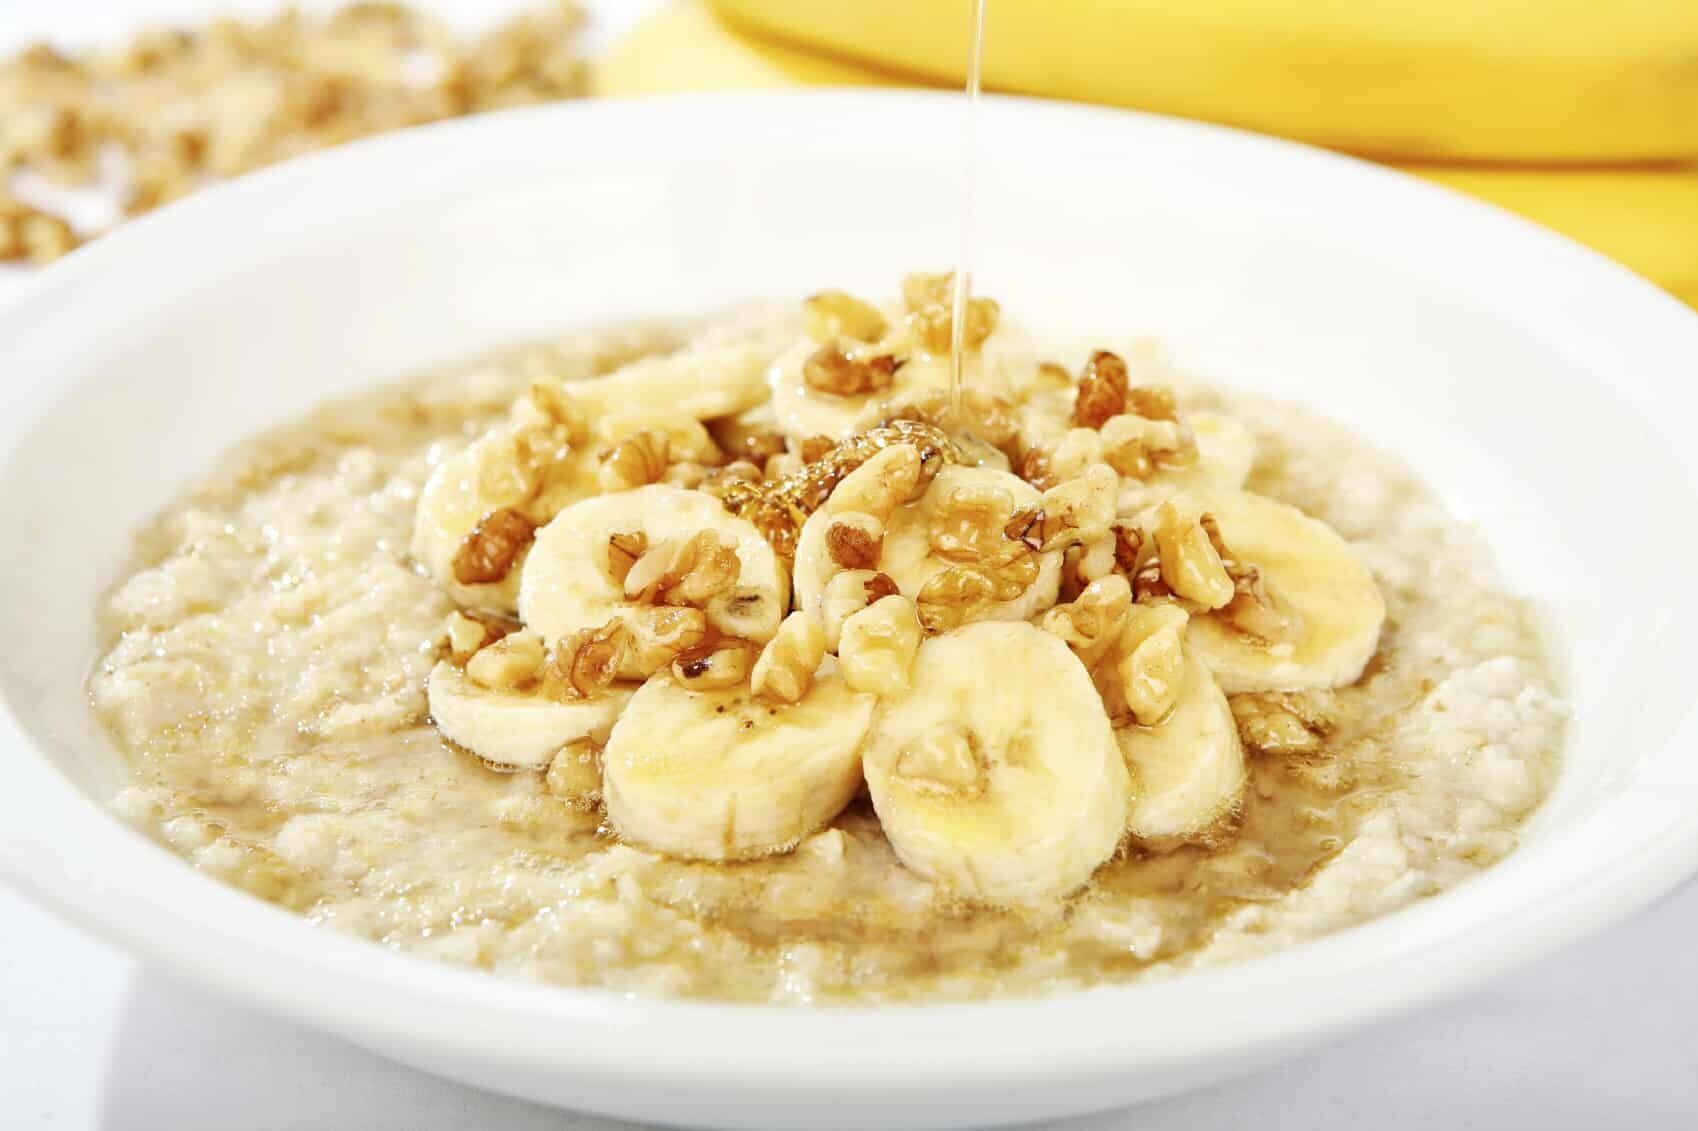 Healthy oatmeal for breakfast